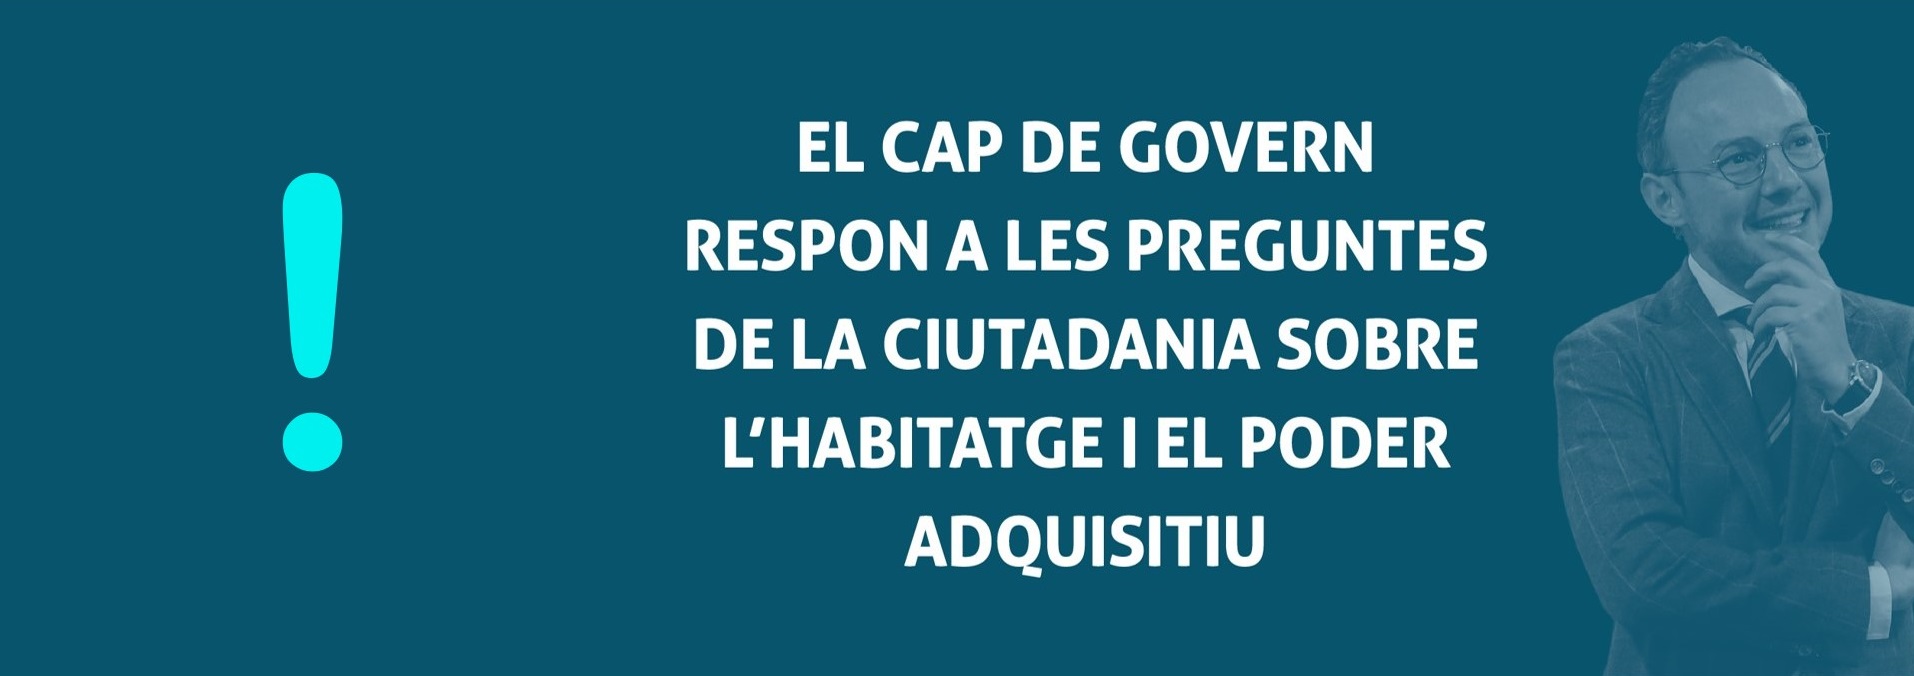 EL CAP RESPON